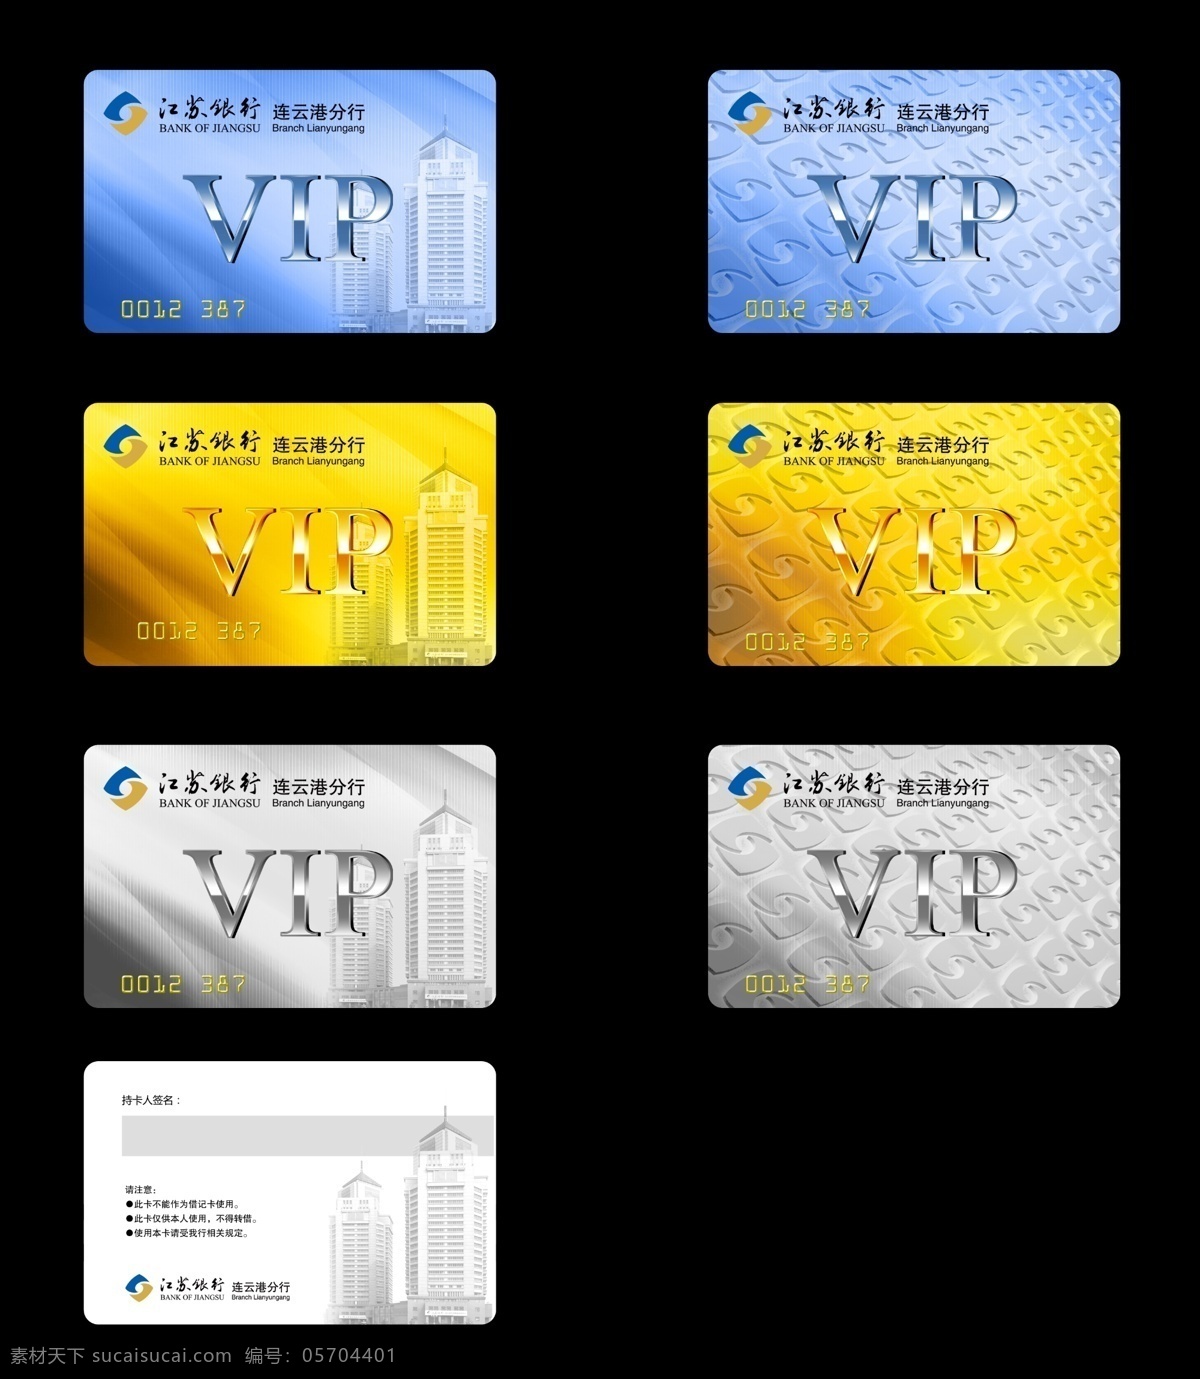 江苏 银行 vip 卡 模板 银行卡 vip卡 江苏银行 vip卡模版 名片模版 名片设计 红色